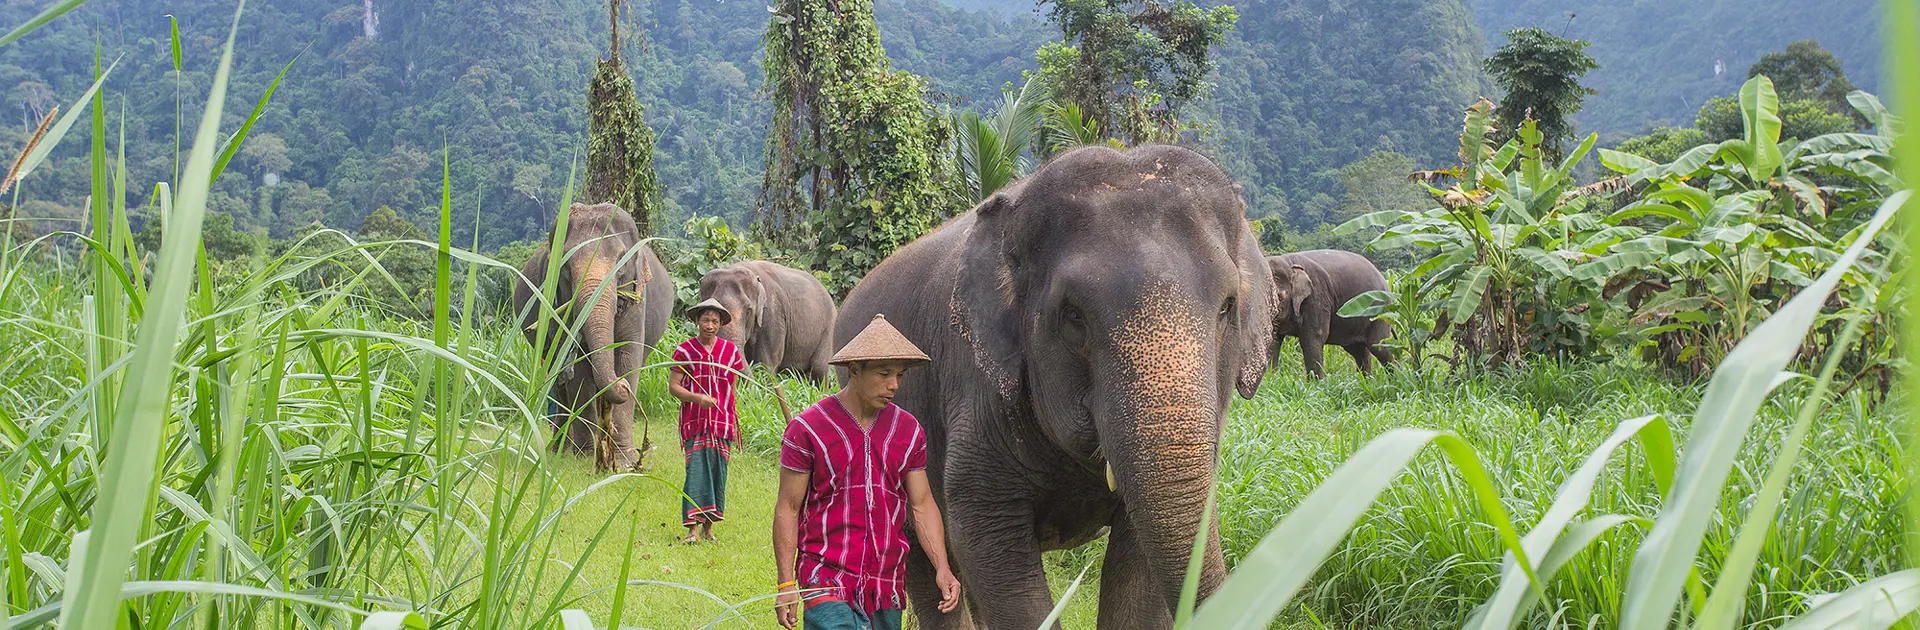 ELEFANTER - I kommer tæt på elefanterne i Elephant Hills, der arbejder på at bringe de gamle arbejdselefanter og deres afkom tilbage til regnskoven, Check Point Travel